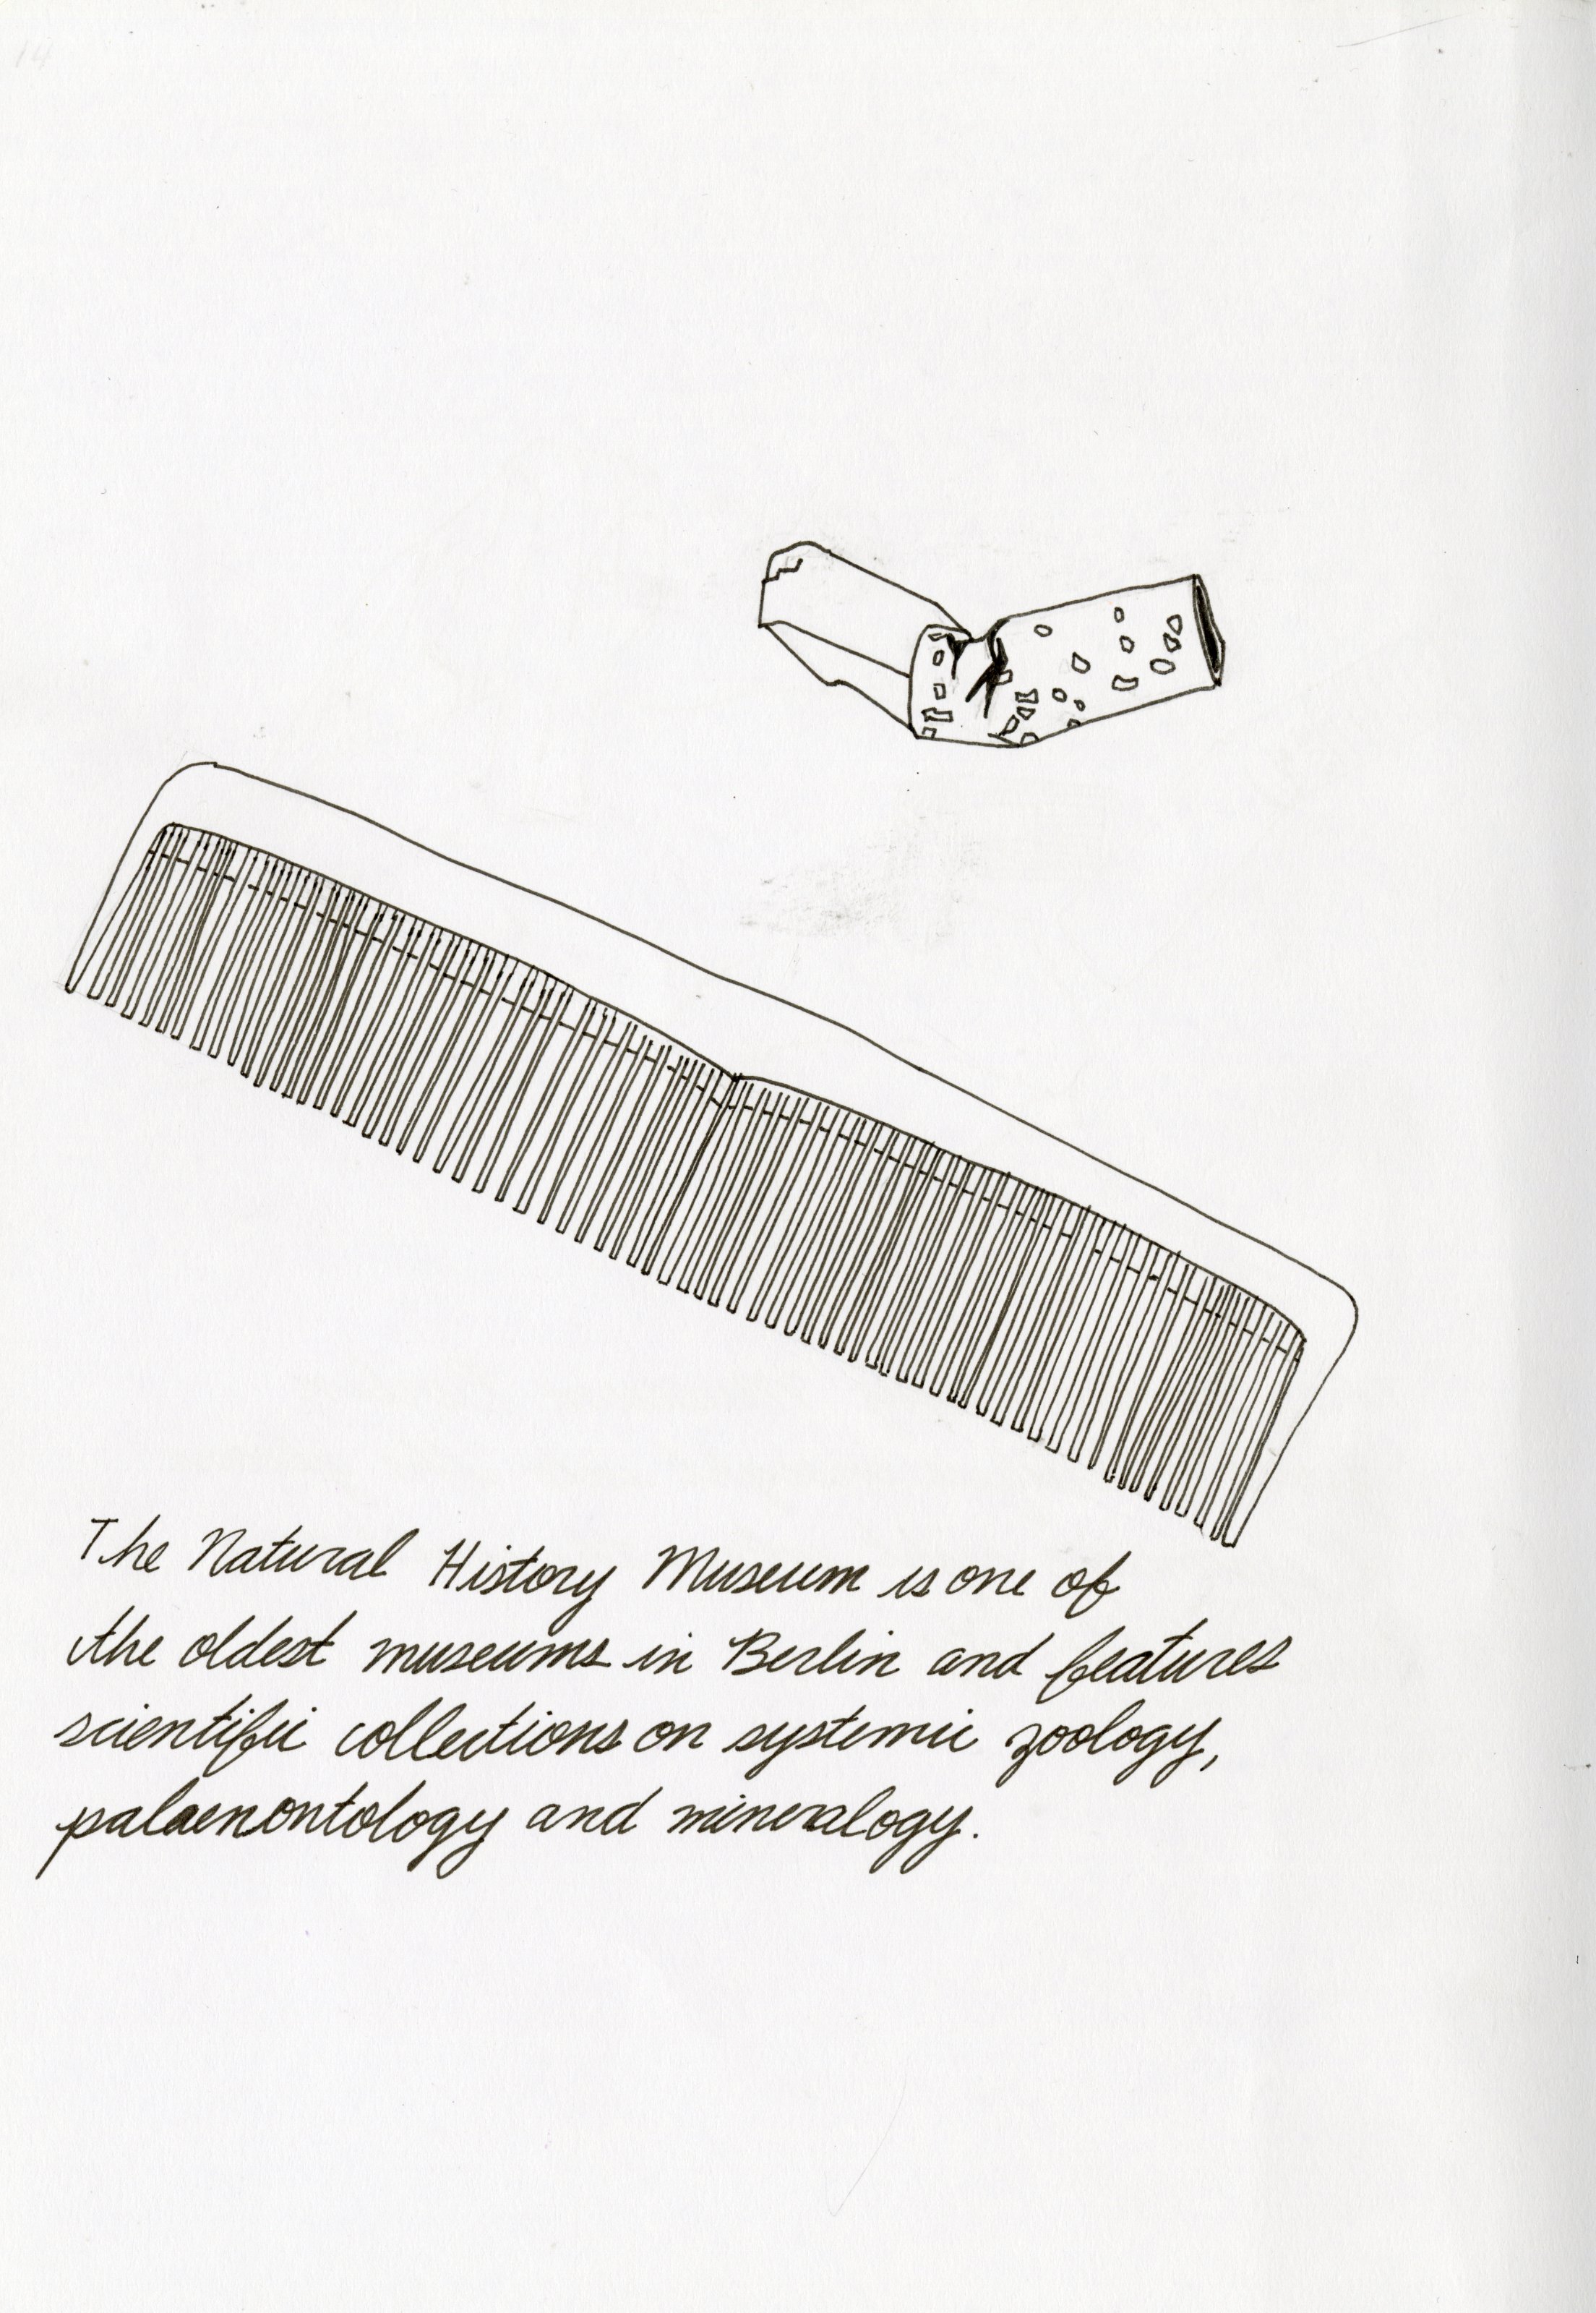 Cigarette and Comb Illustration